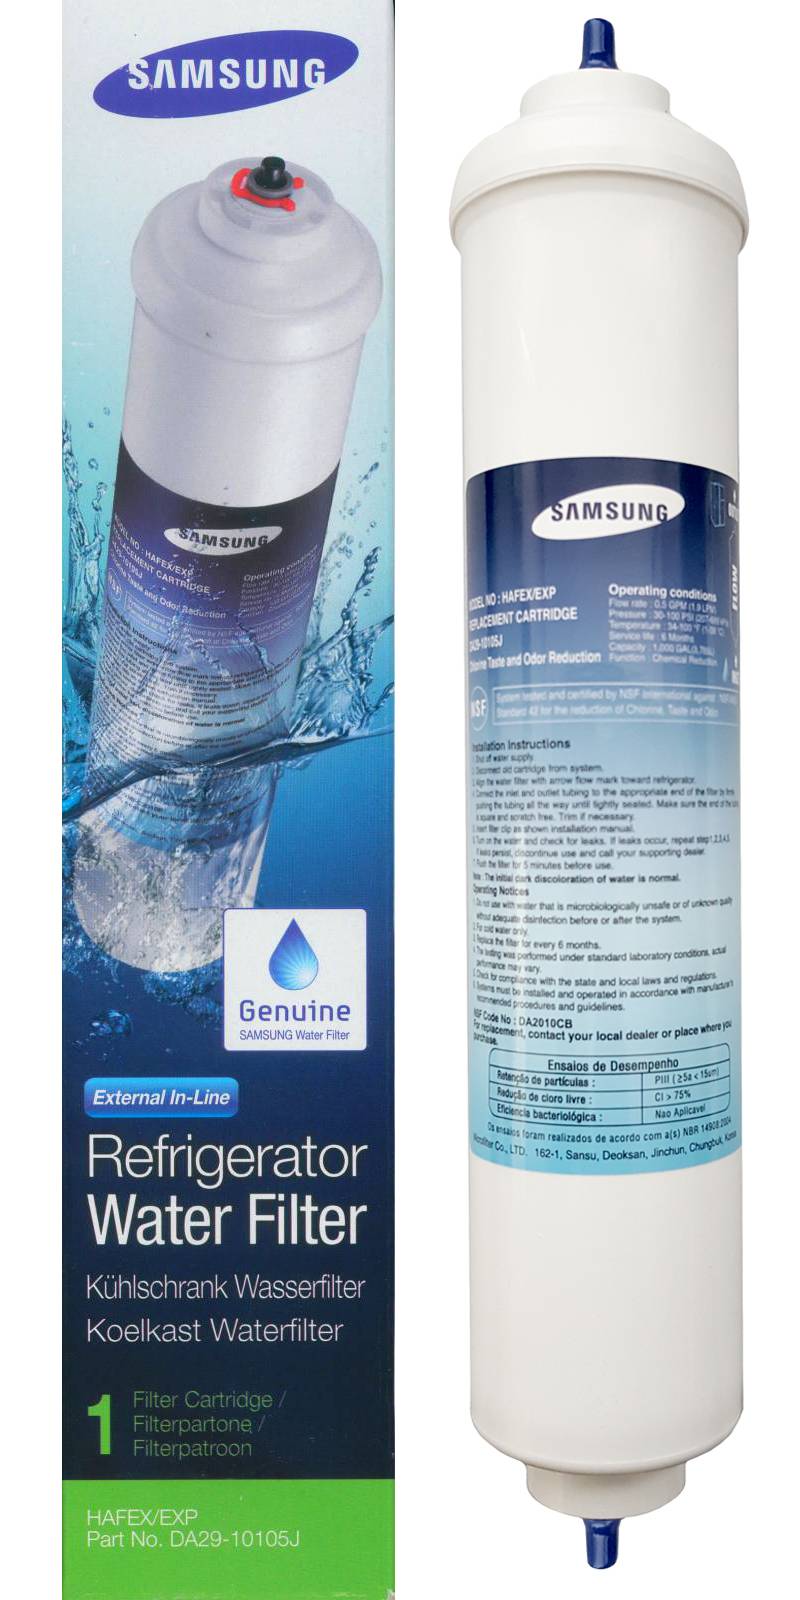 Original Samsung DA29-10105J Wasserfilter Filter HAFEX/EXP Kühlschrank